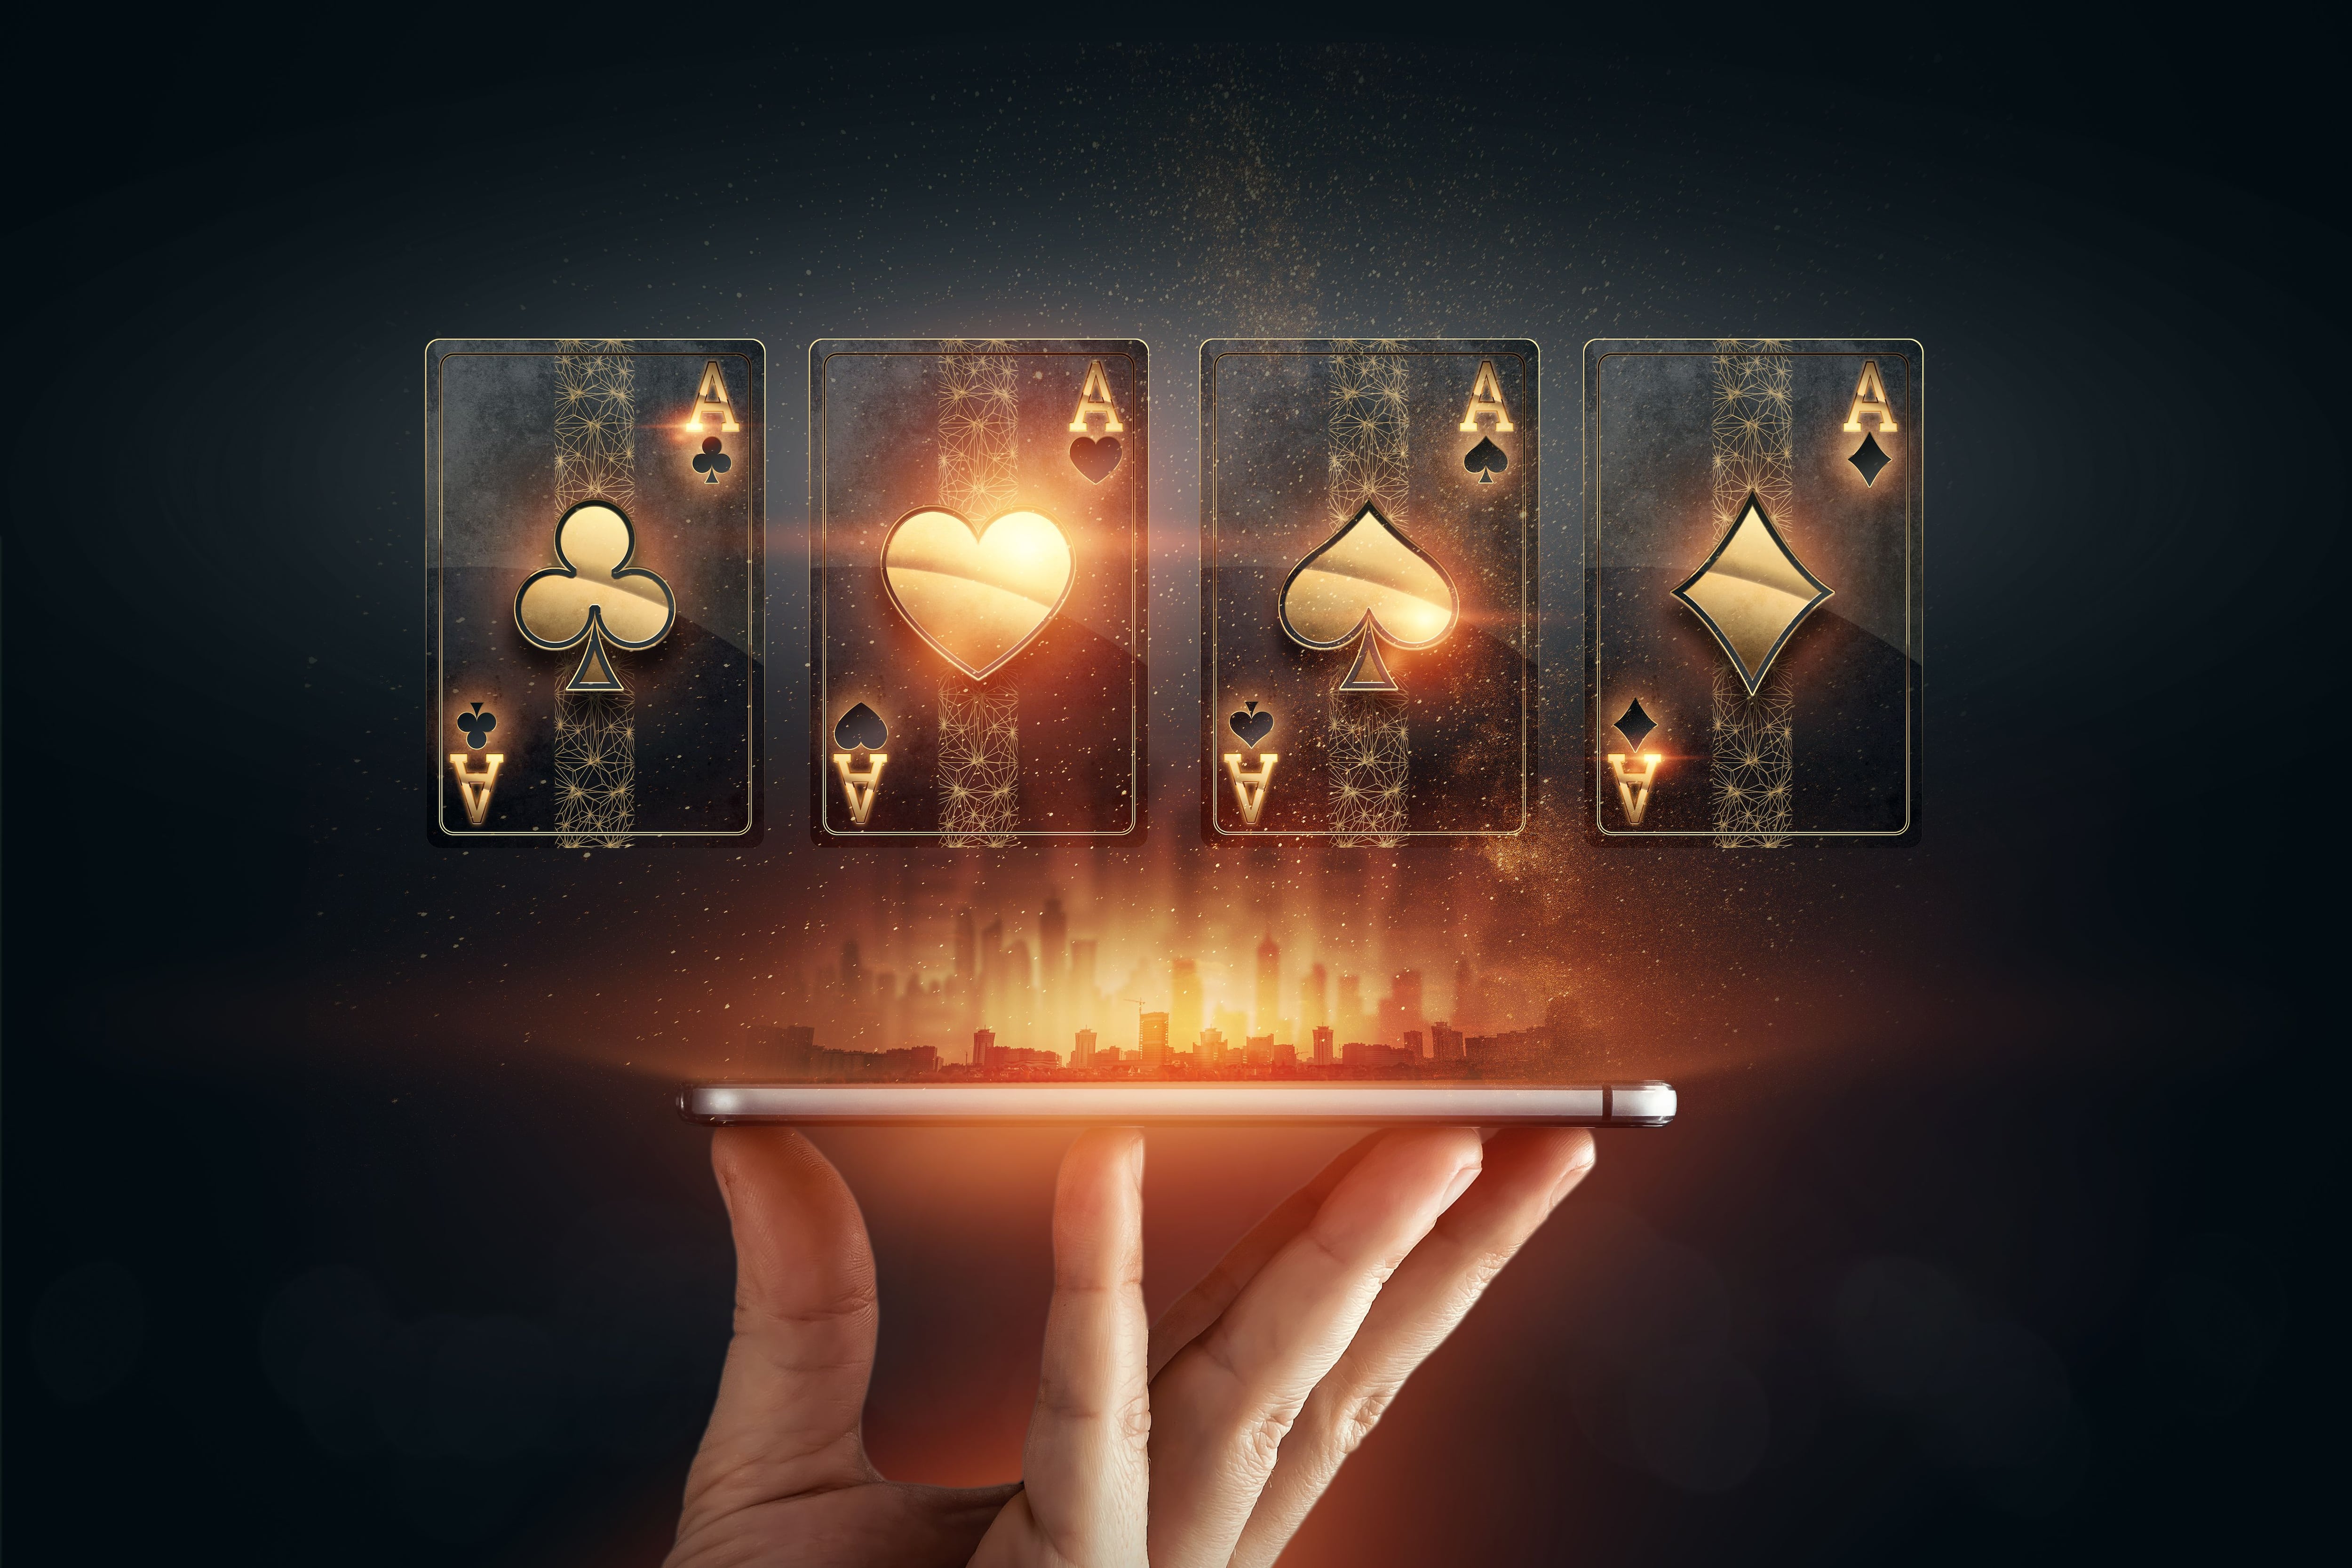 Online Casino - How to gamble online